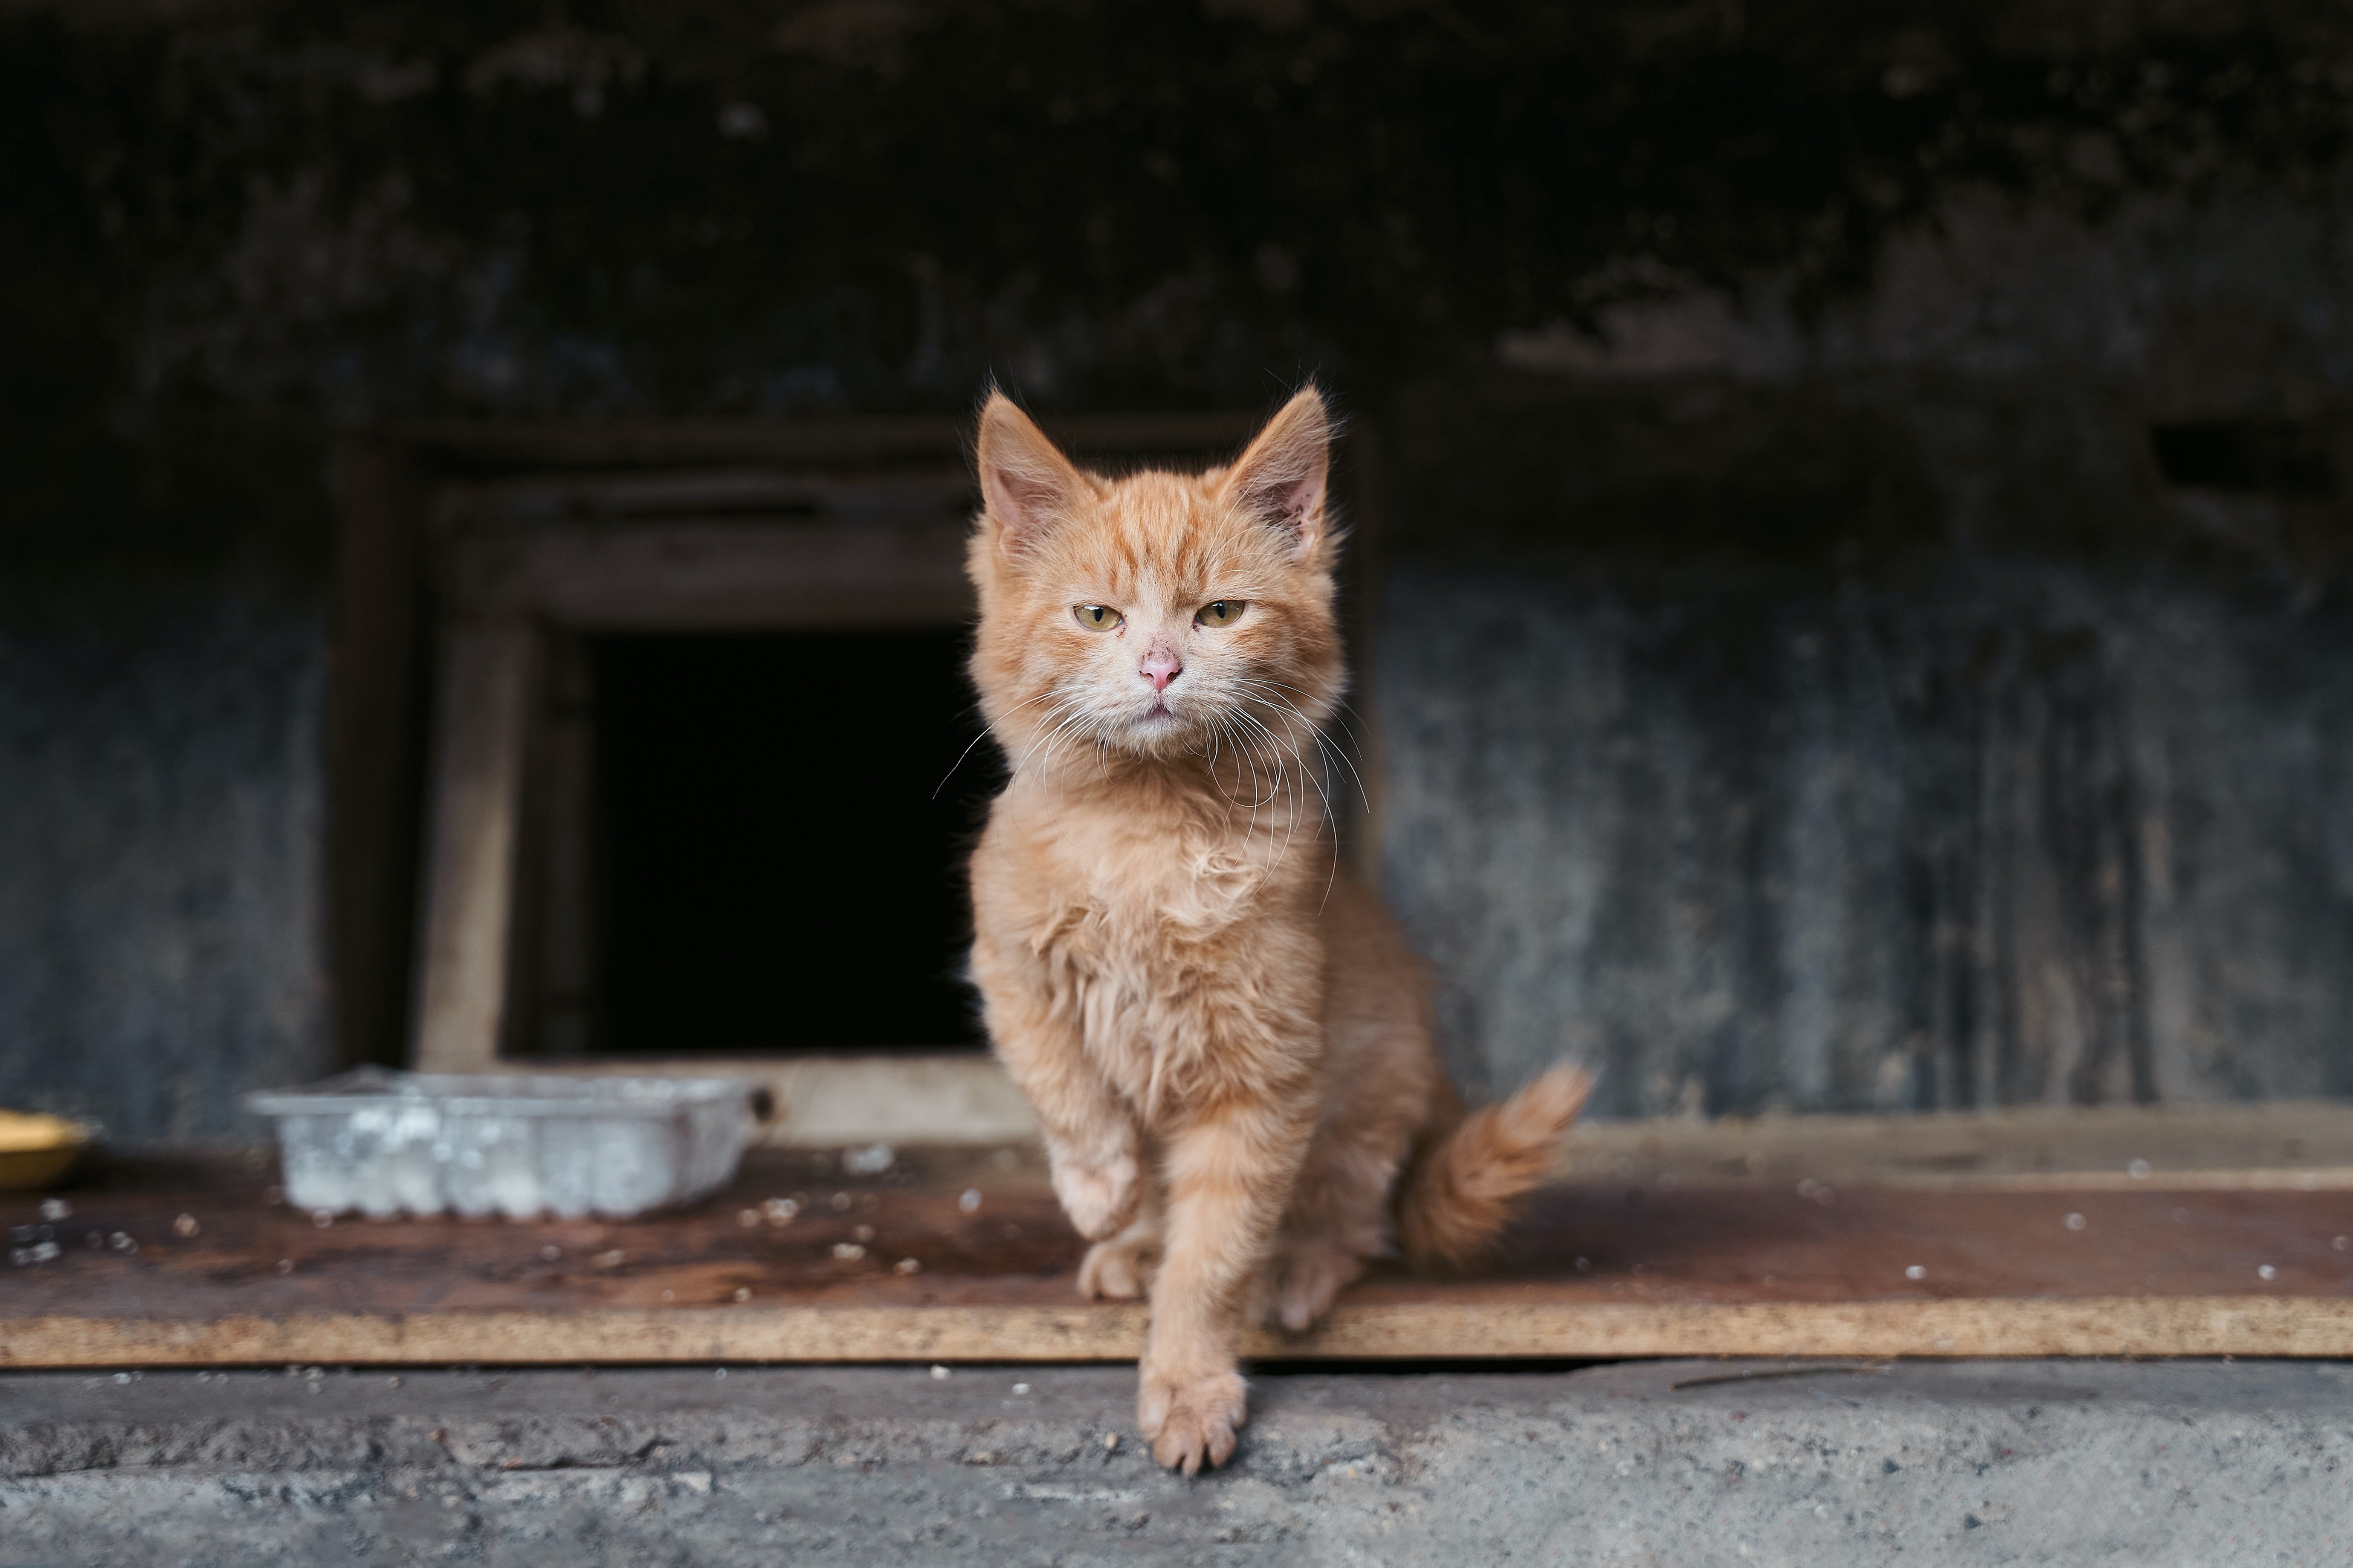 Street cat, Turkey